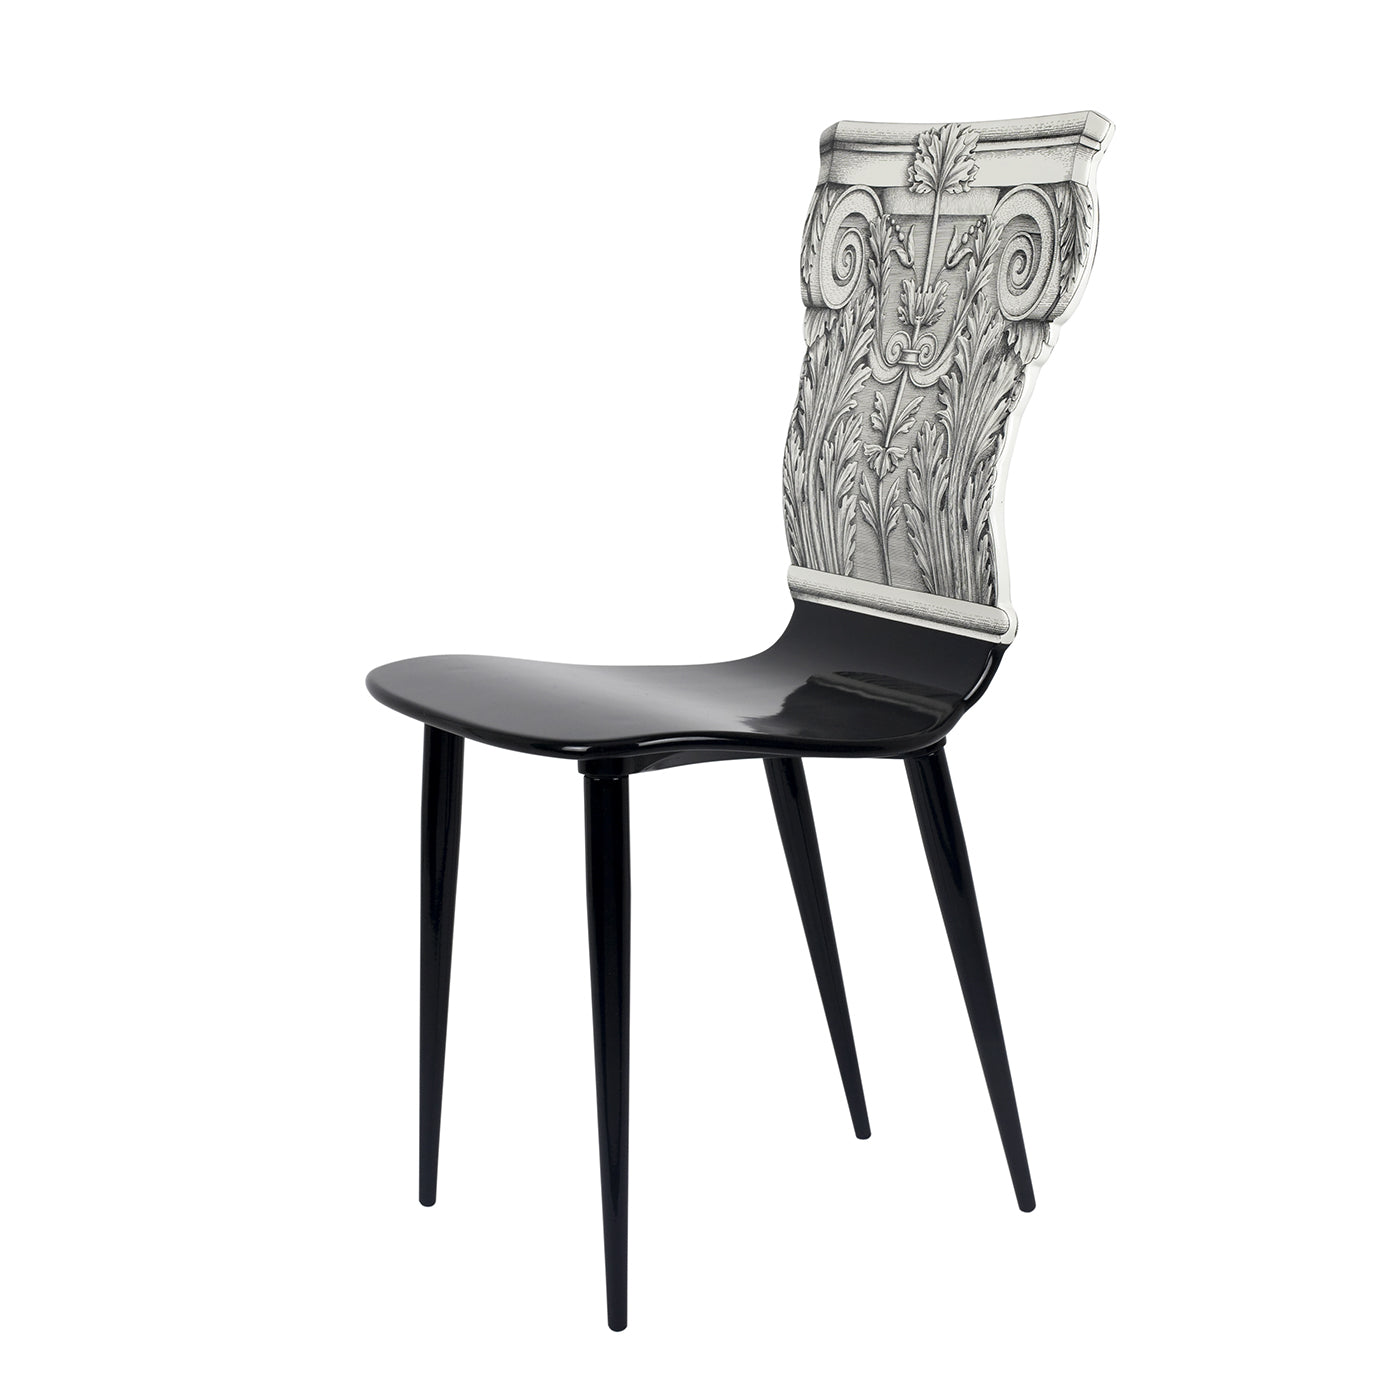 Capitello Corinzio Chair - Alternative view 2